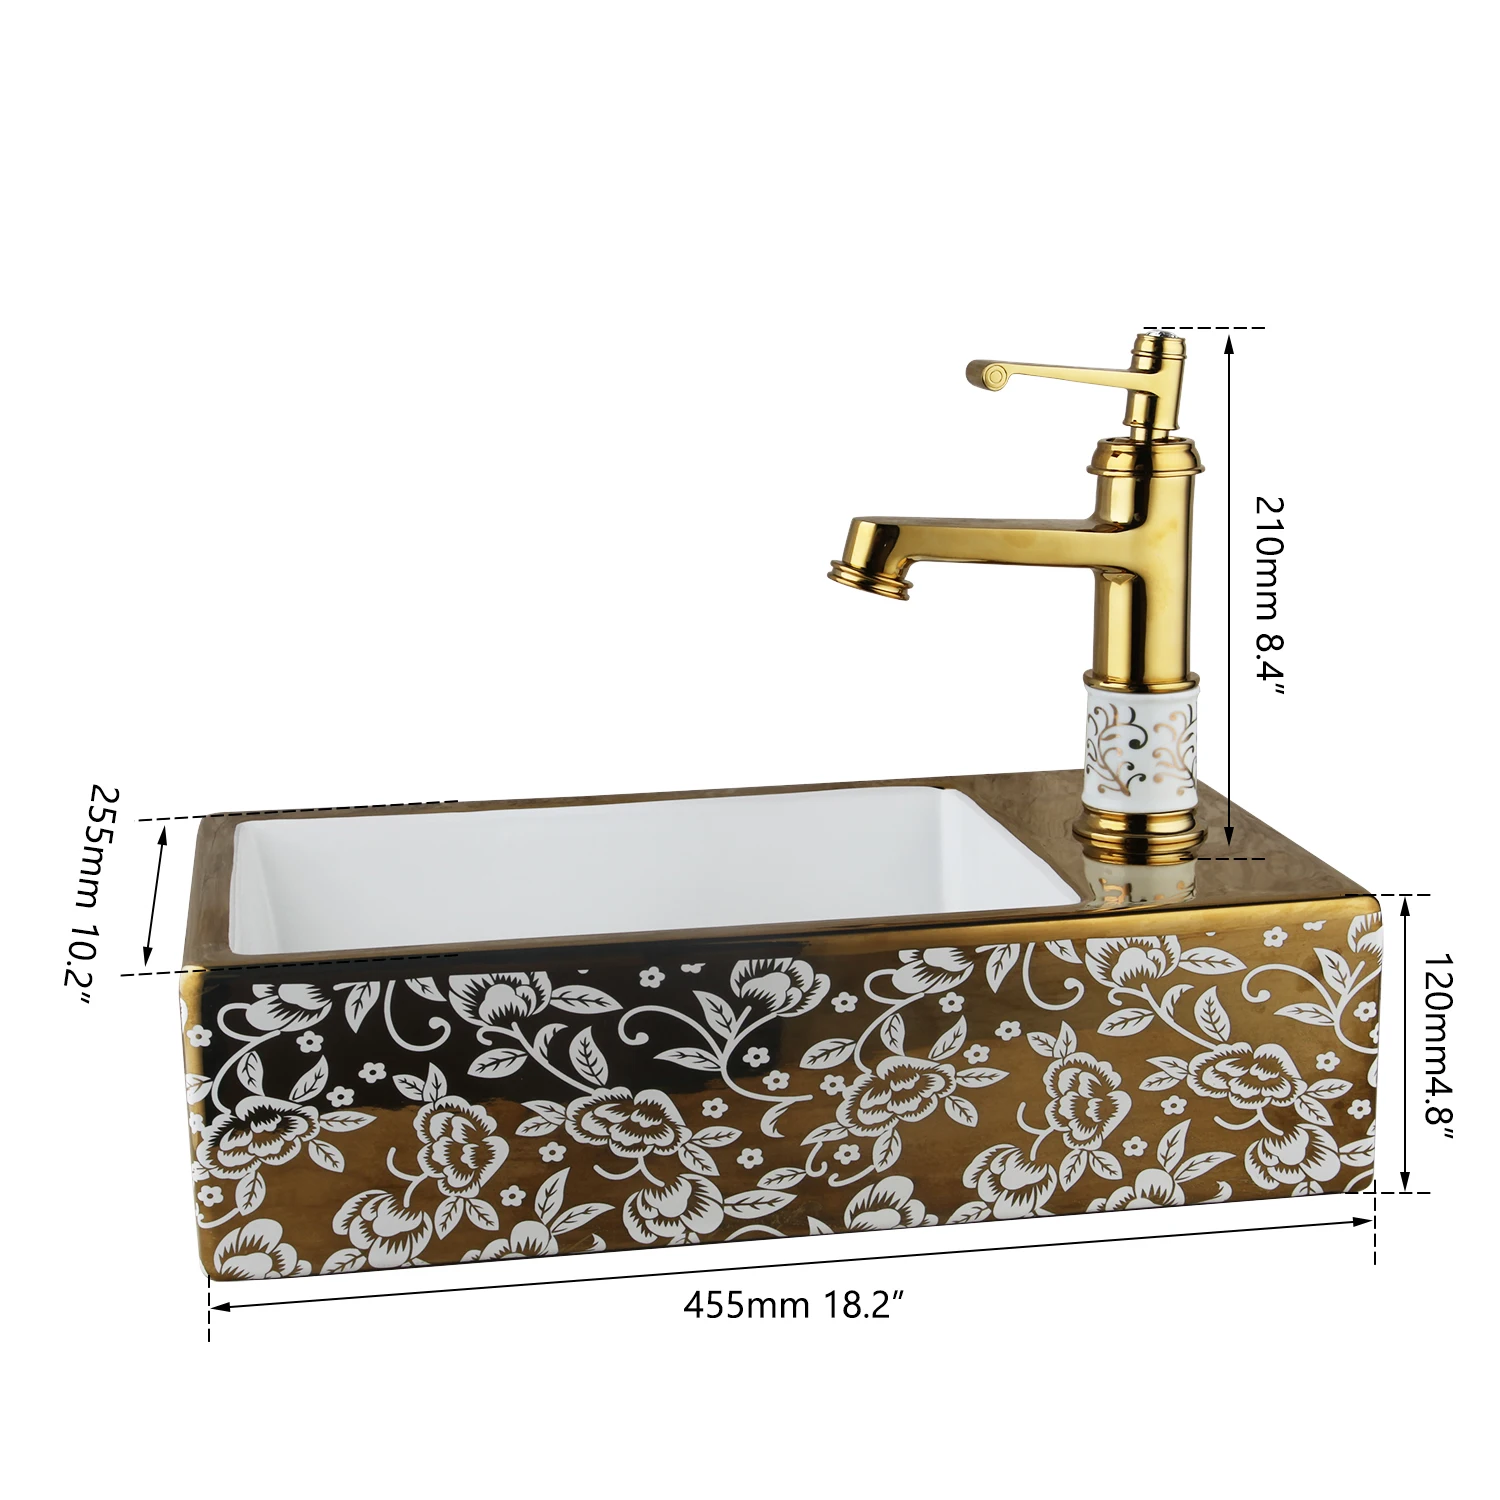 Monite золотистого цвета, полированный керамический умывальник, раковина для ванной, смеситель из латуни